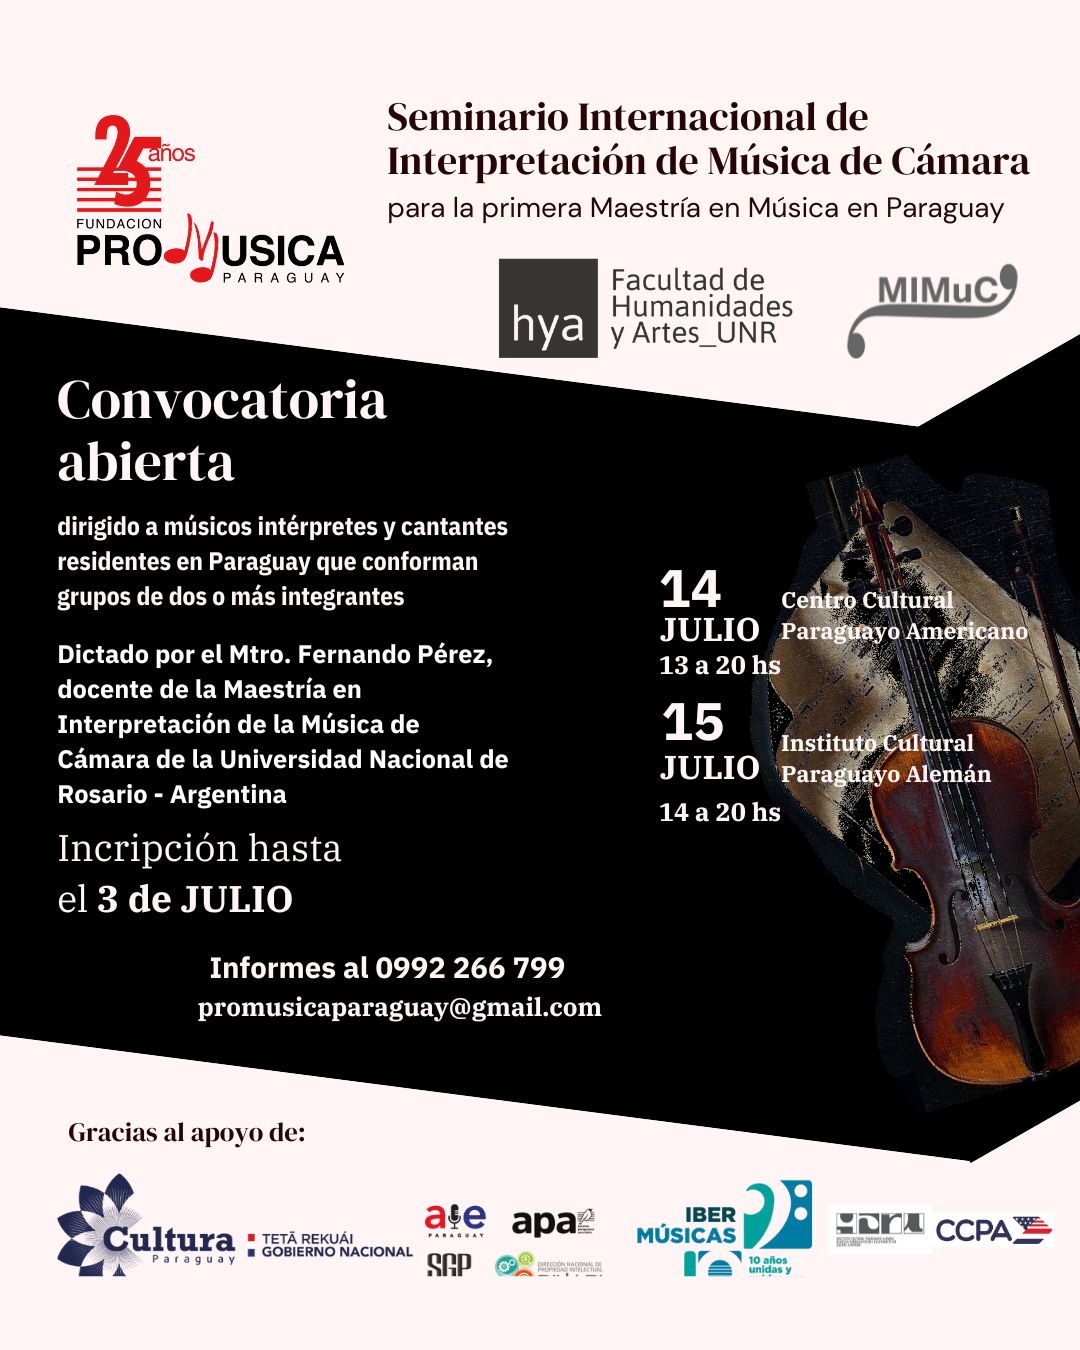 Seminario gratuito para la primera Maestría de música en Paraguay abre inscripciones imagen